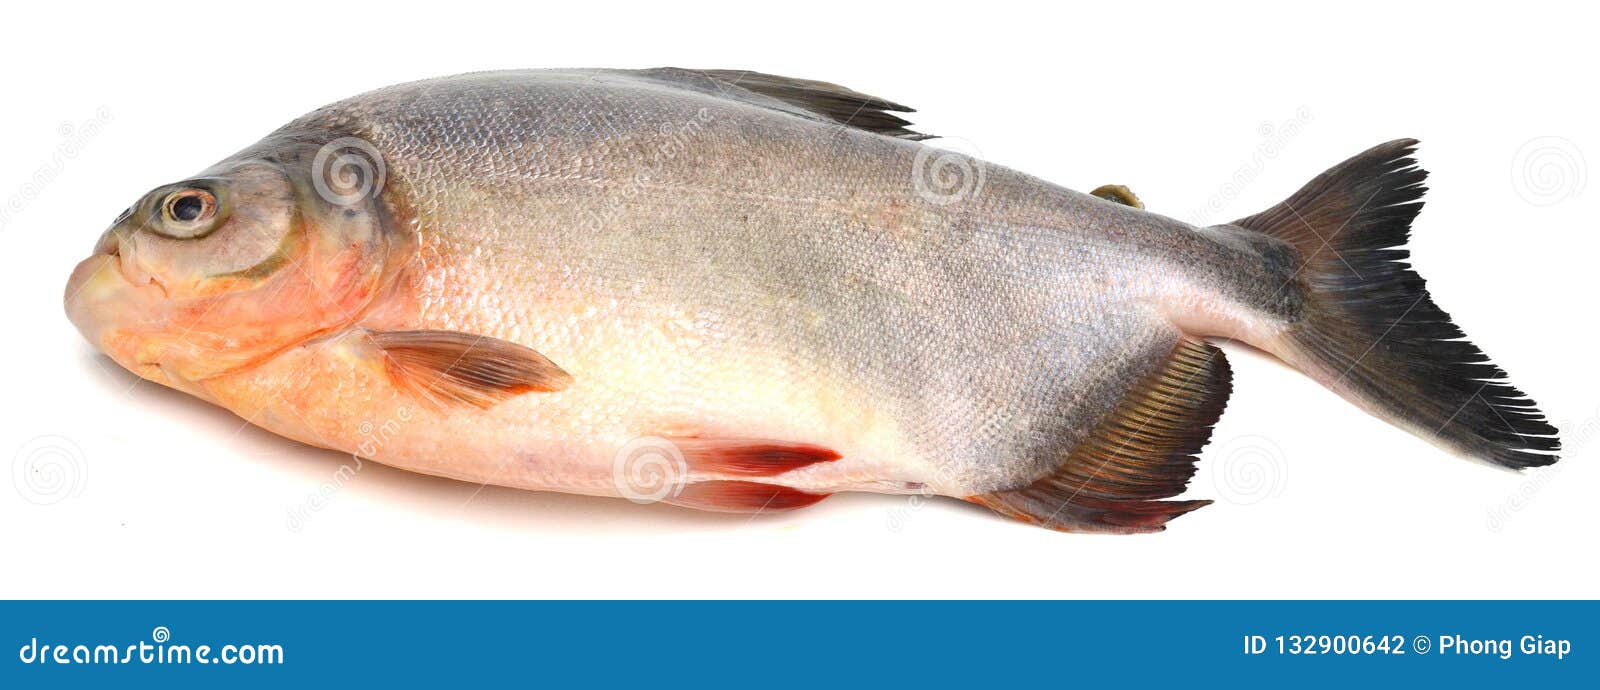 tambaqui pacu fish. live, peru.